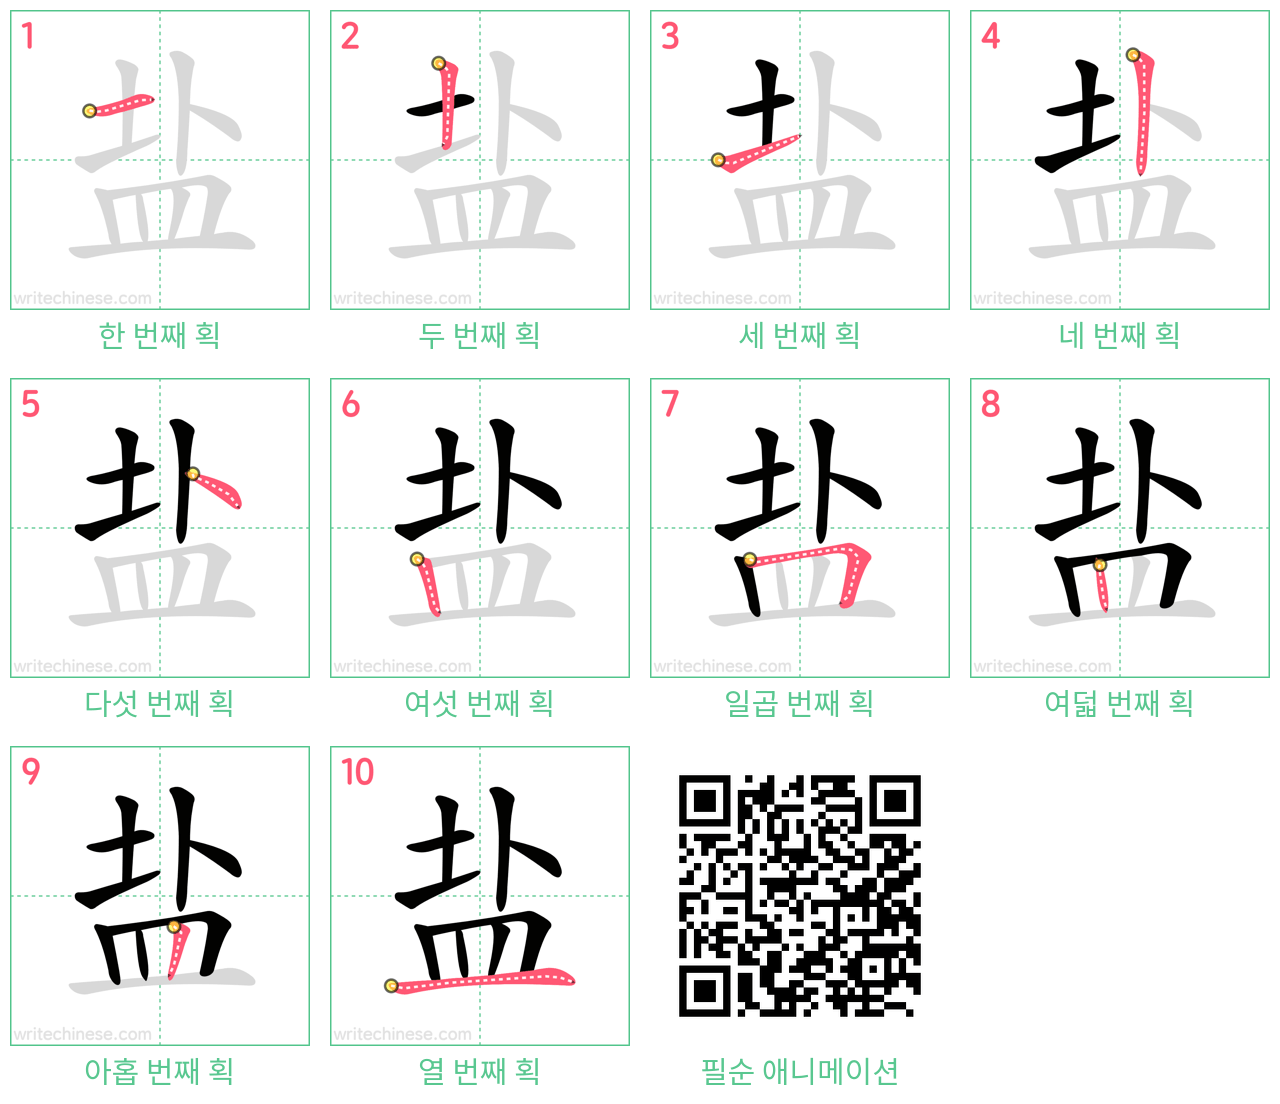 盐 step-by-step stroke order diagrams